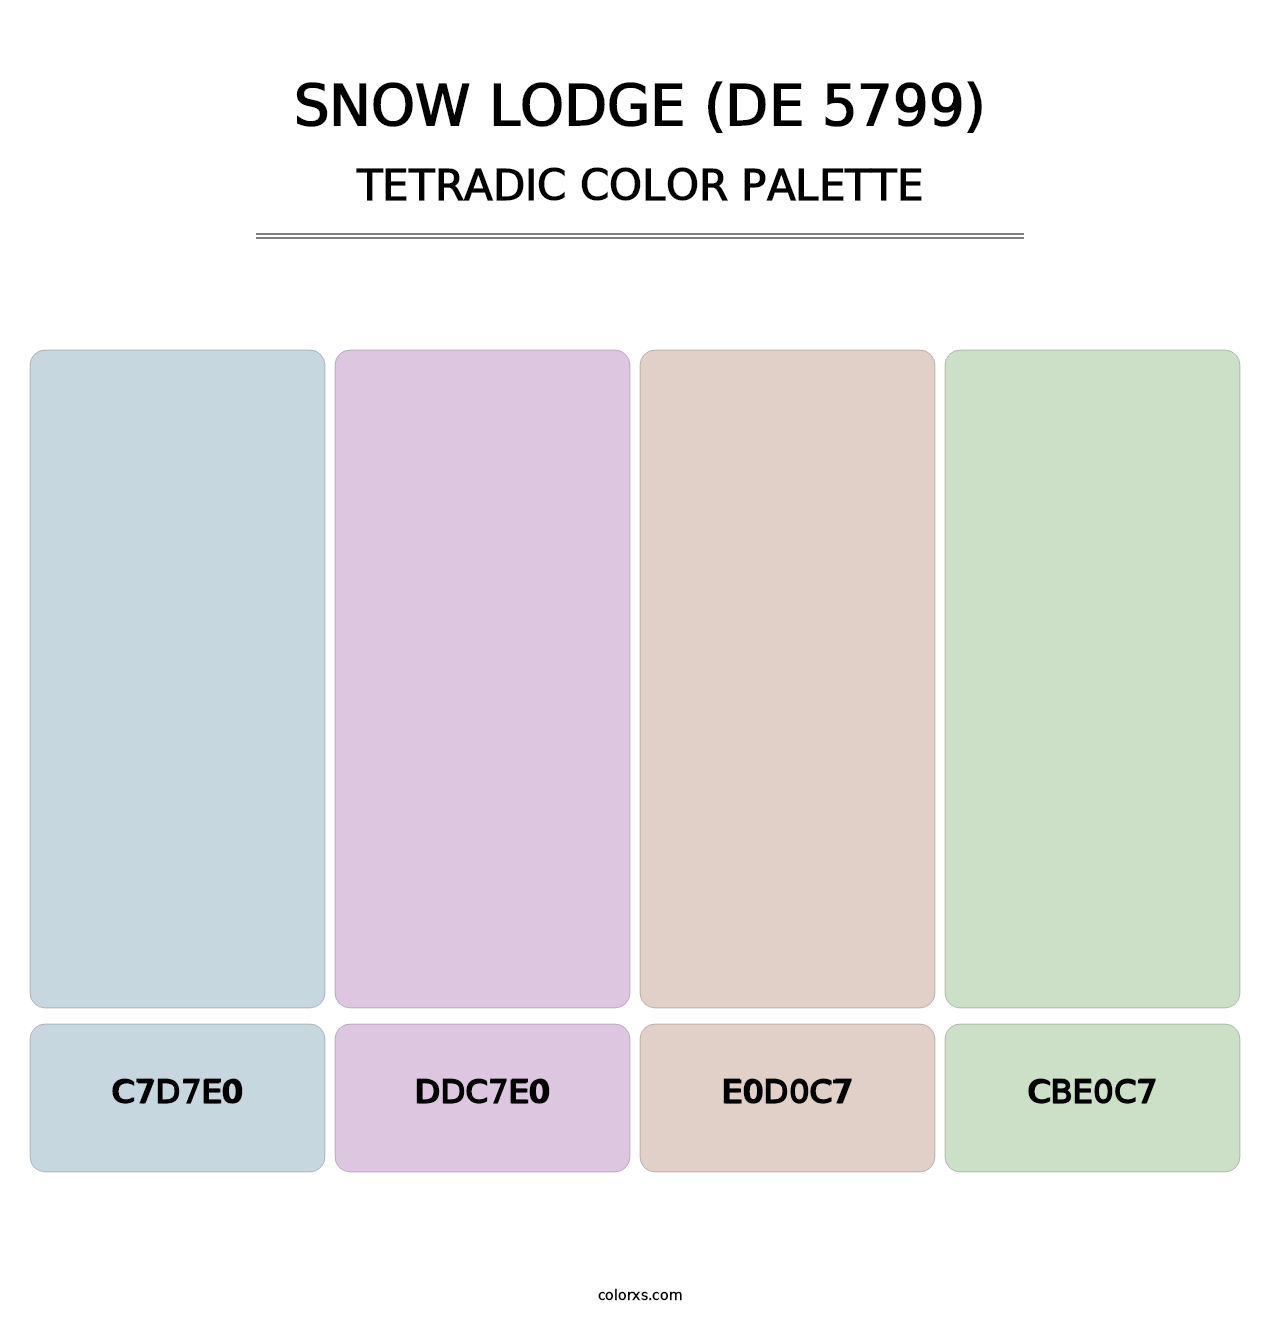 Snow Lodge (DE 5799) - Tetradic Color Palette